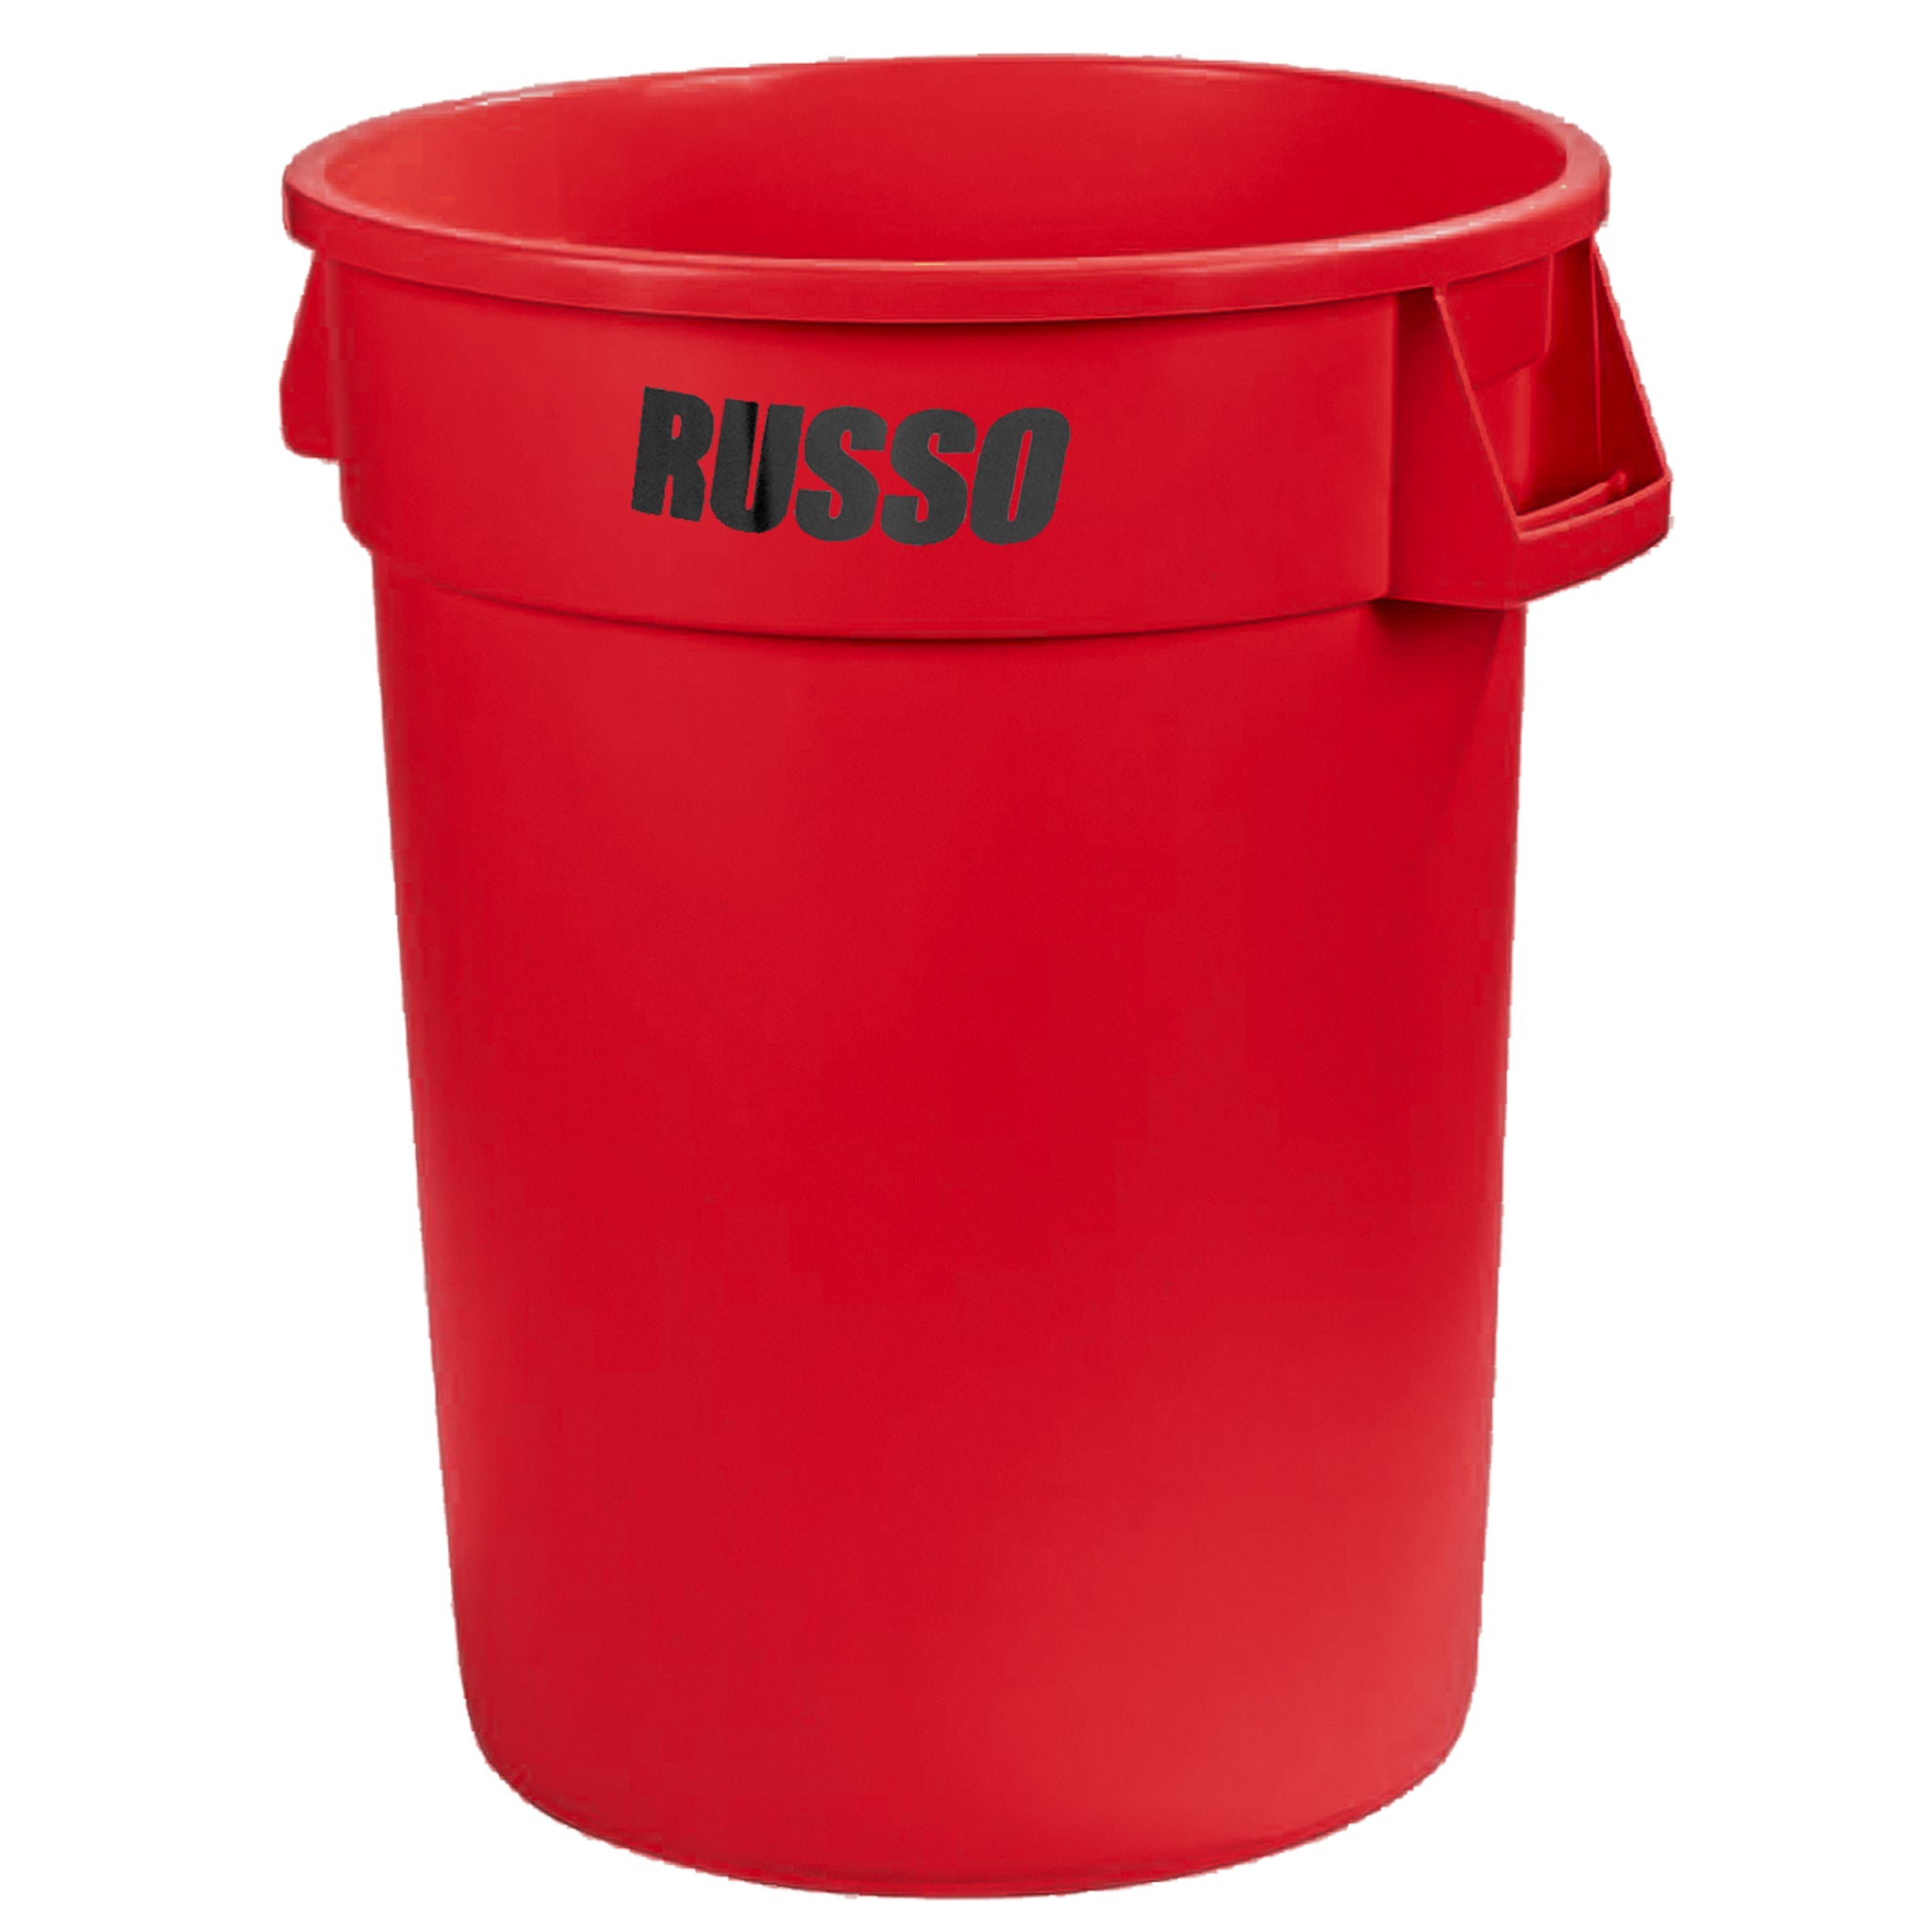 Contenedor de basura Bronco redondo, 32 galones, color rojo